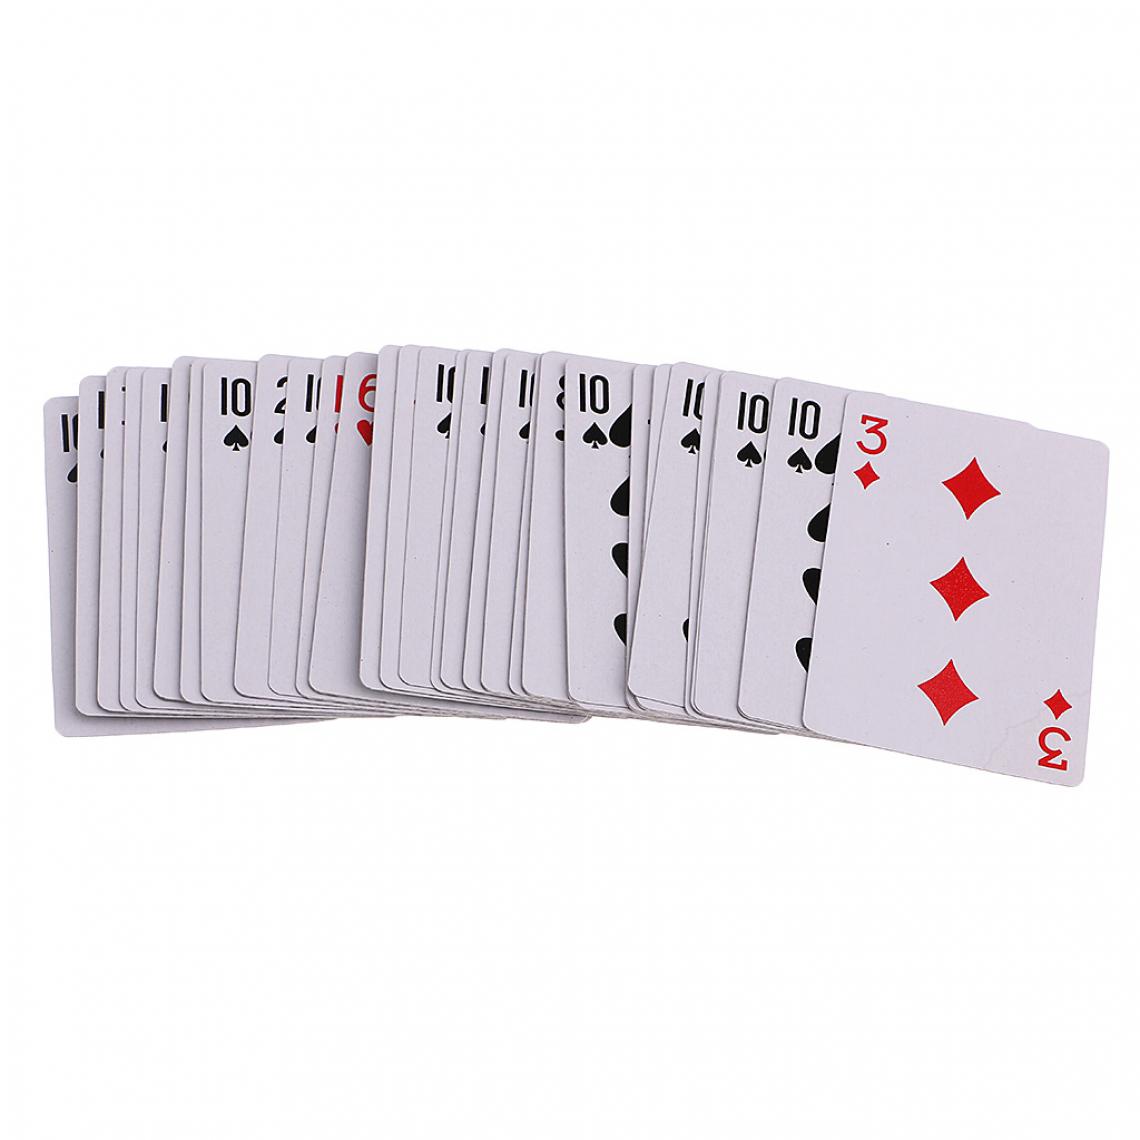 marque generique - Pro Magie Pont De Cartes Magicien Farce Astuce Gros Plan étage Poker Prop - Objets déco